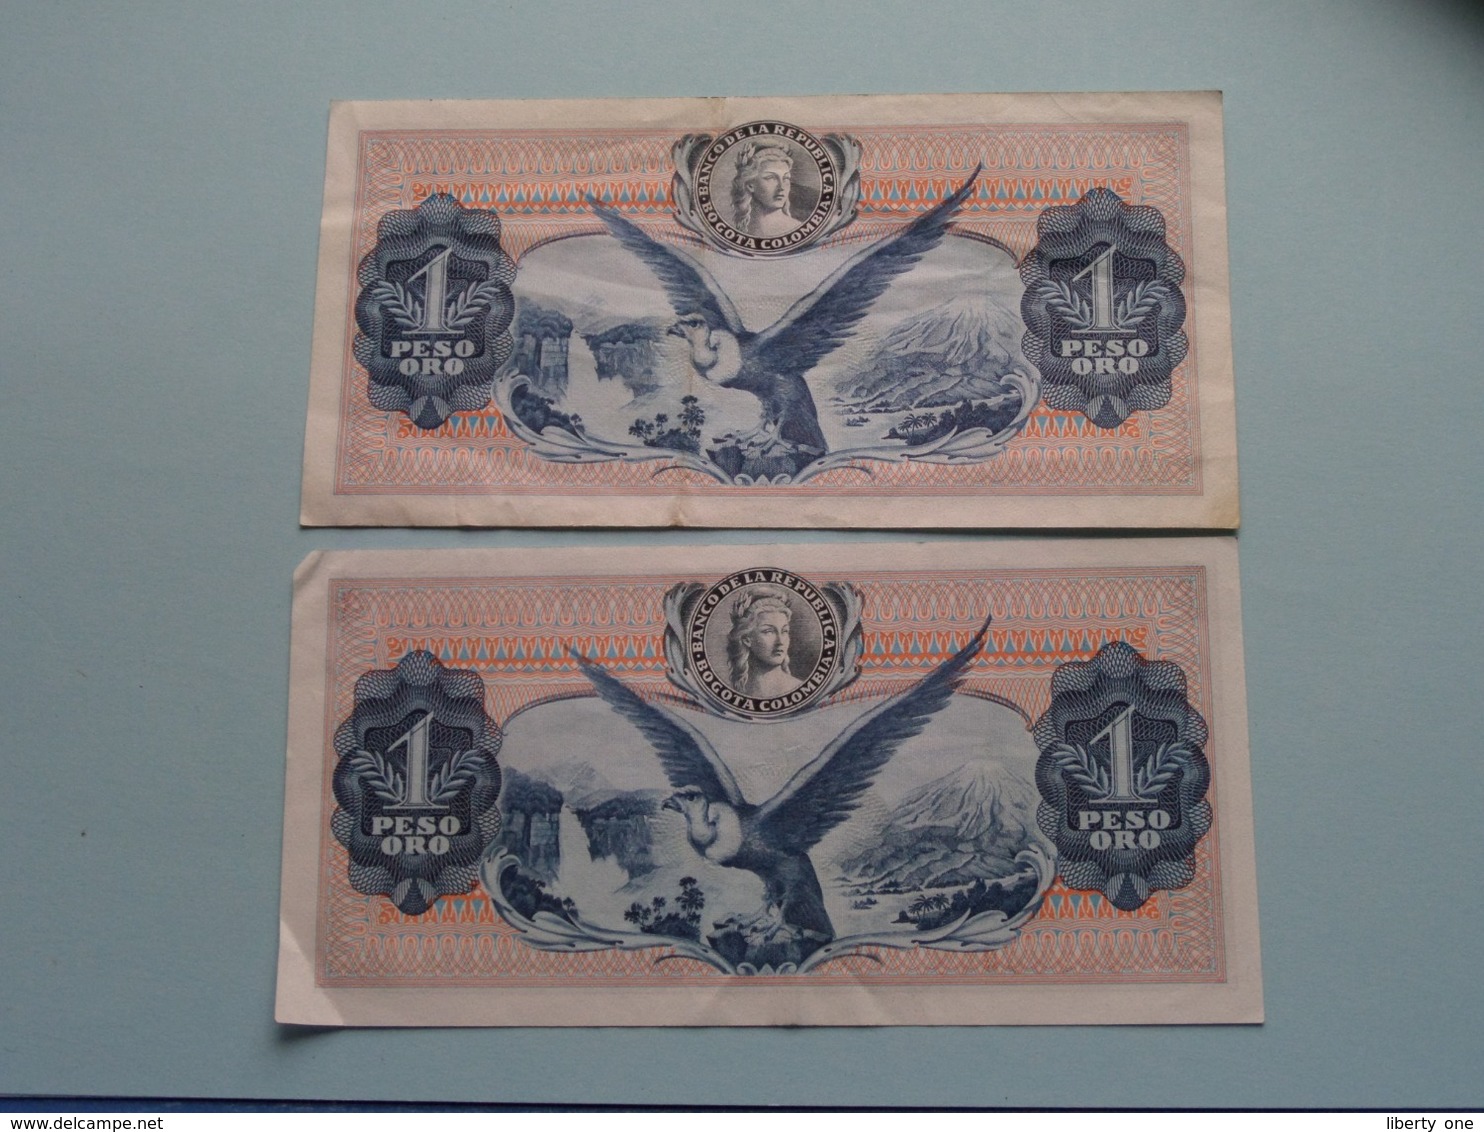 1 - Un Peso Oro ( 63898324 & 29380994 ) 1973 - Colombia ( For Grade, Please See Photo ) 2 Pcs. ! - Colombie